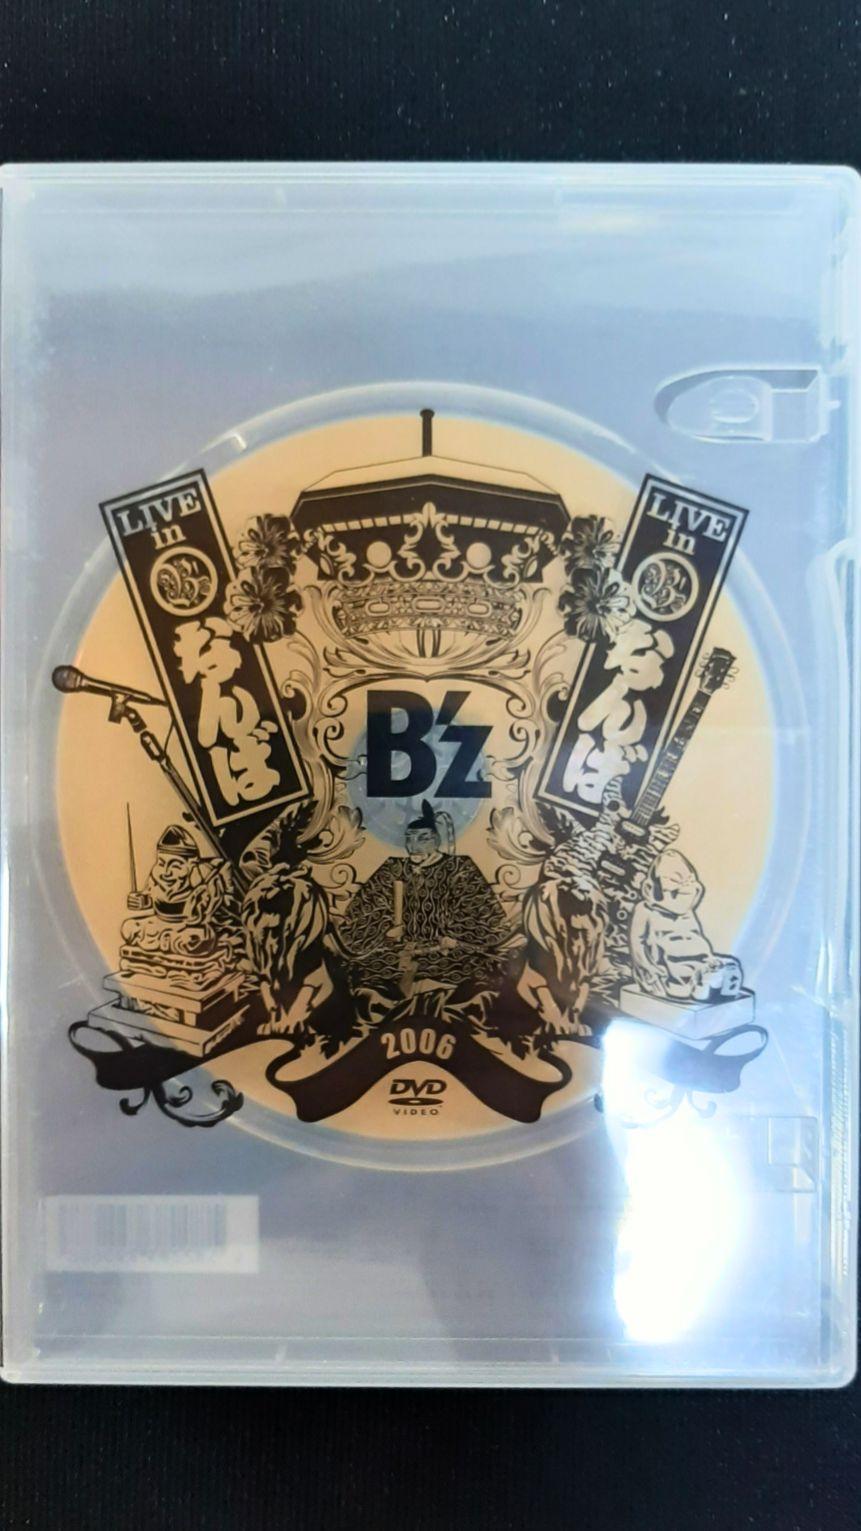 B'z LIVE in なんば 2006 (DVD) - メルカリ